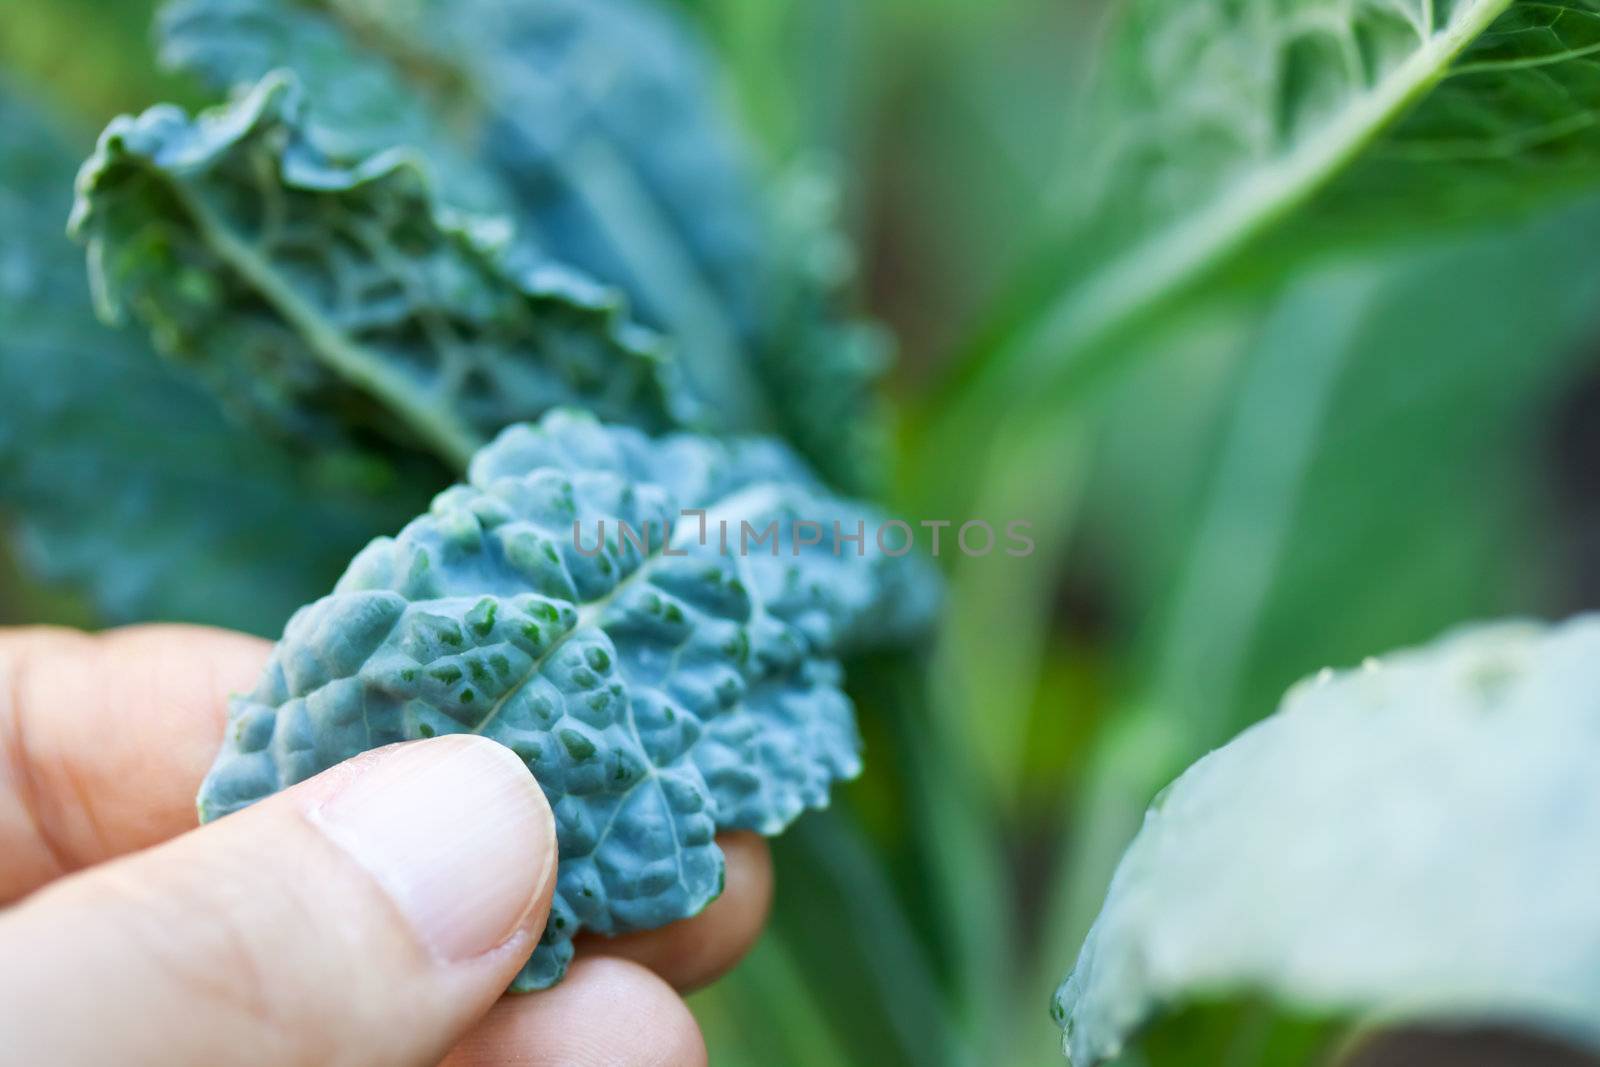 Growing Kale  by melpomene